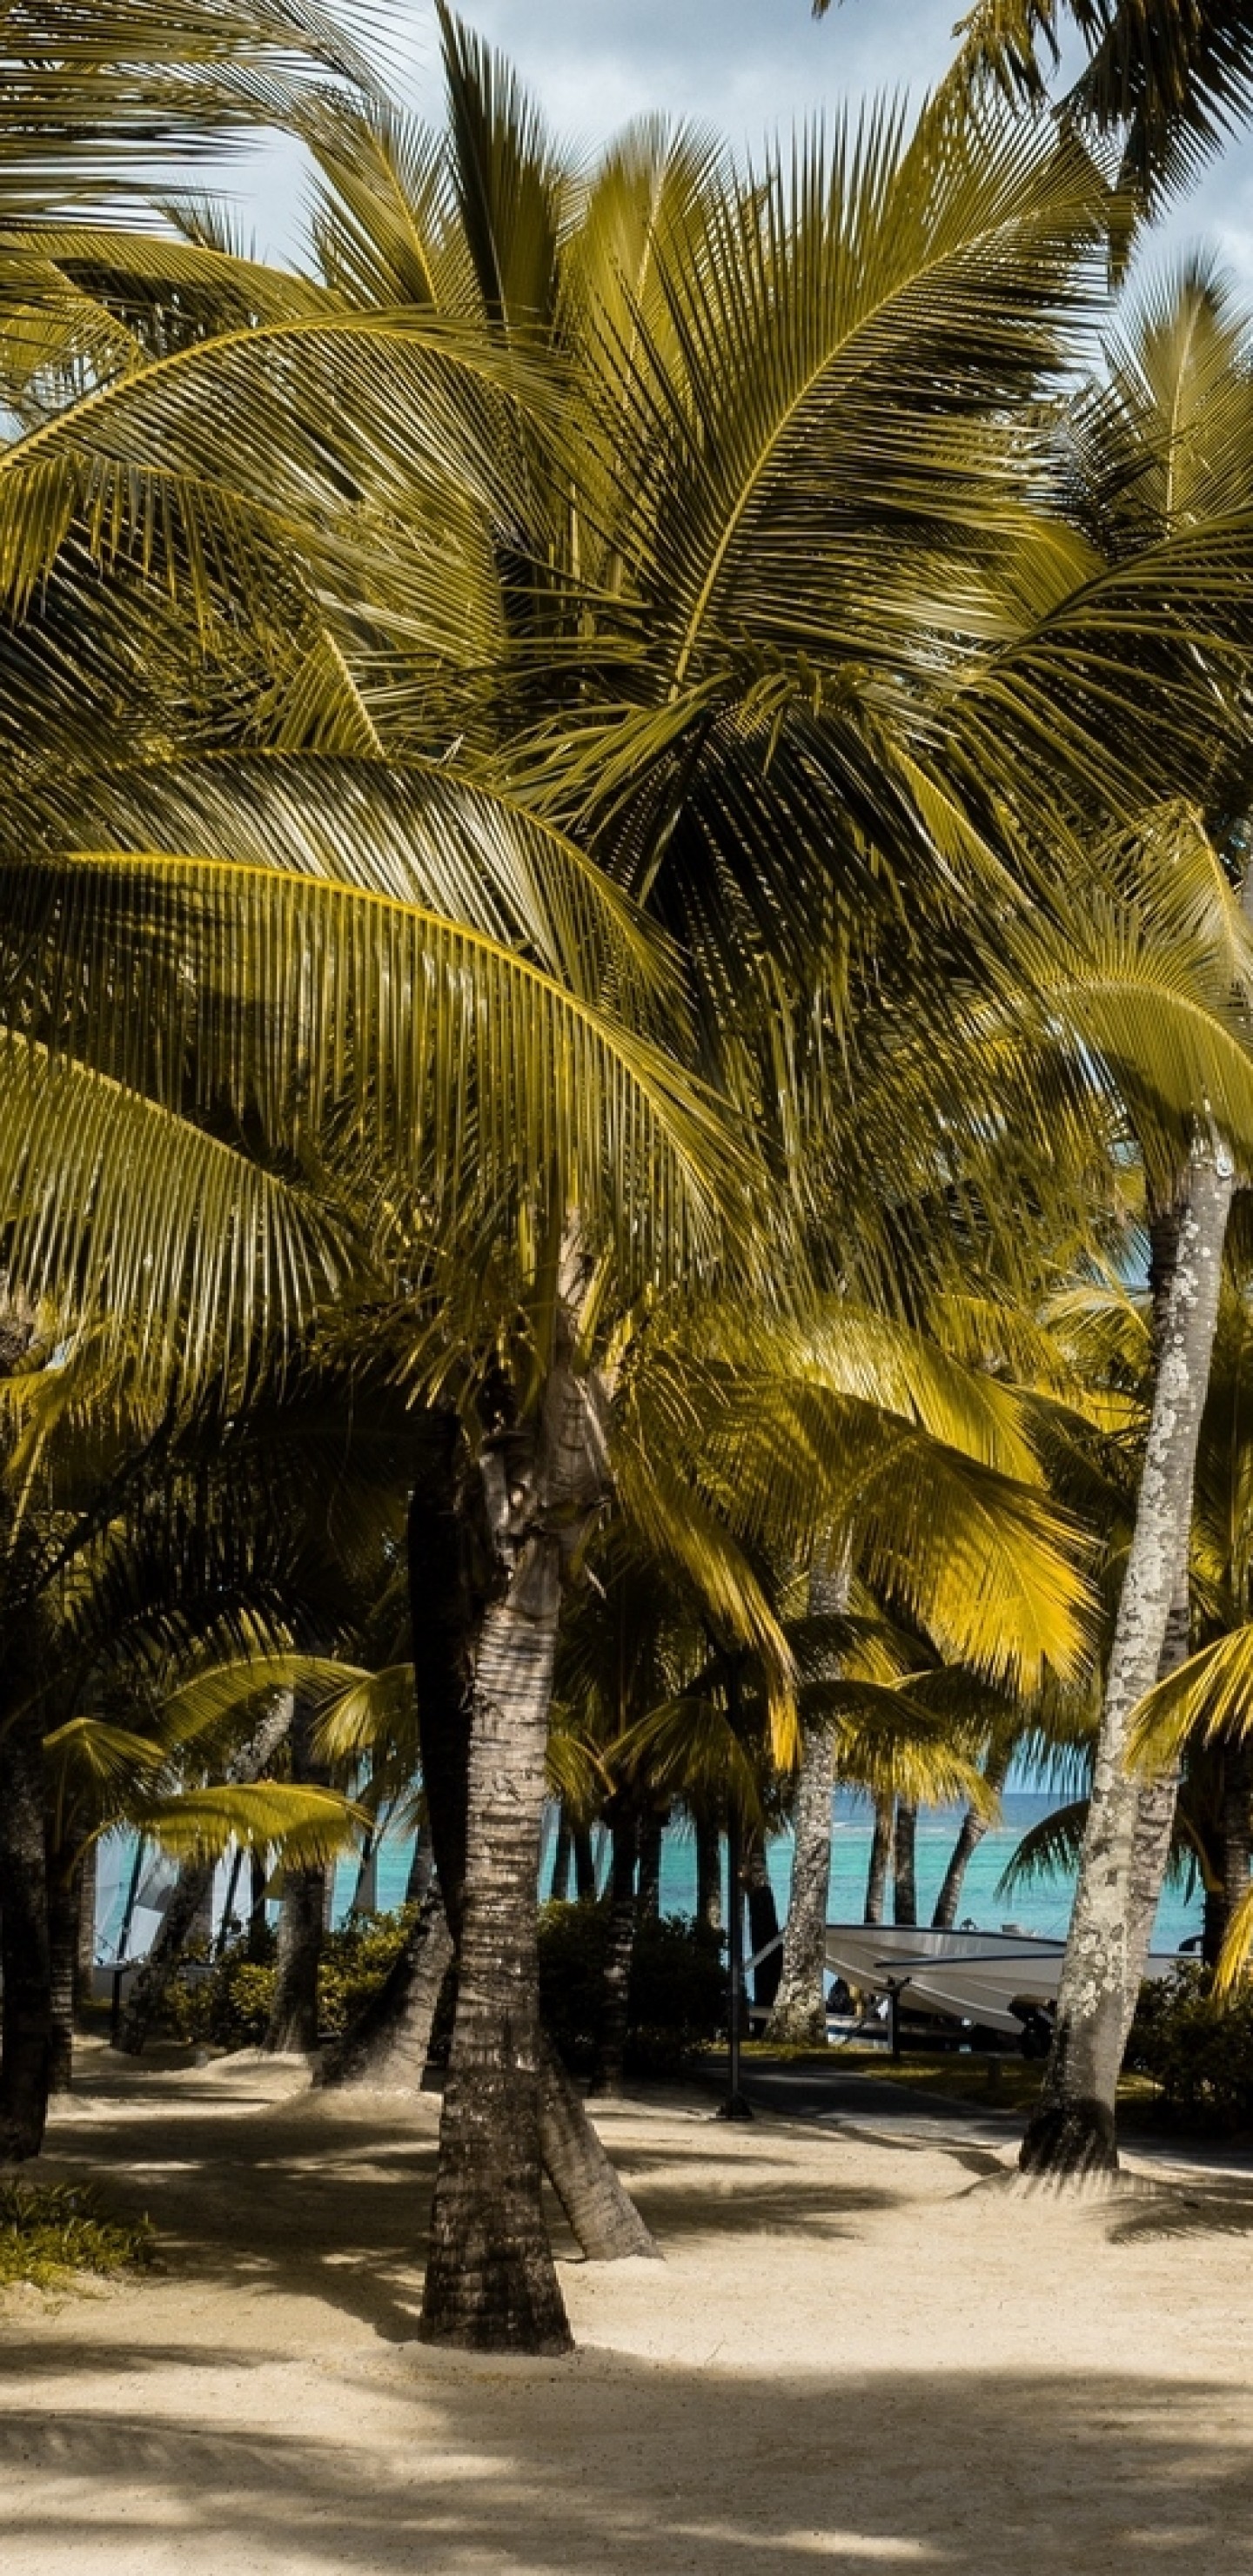 Mauritius, Palm Trees, Beach - Mauritius - HD Wallpaper 